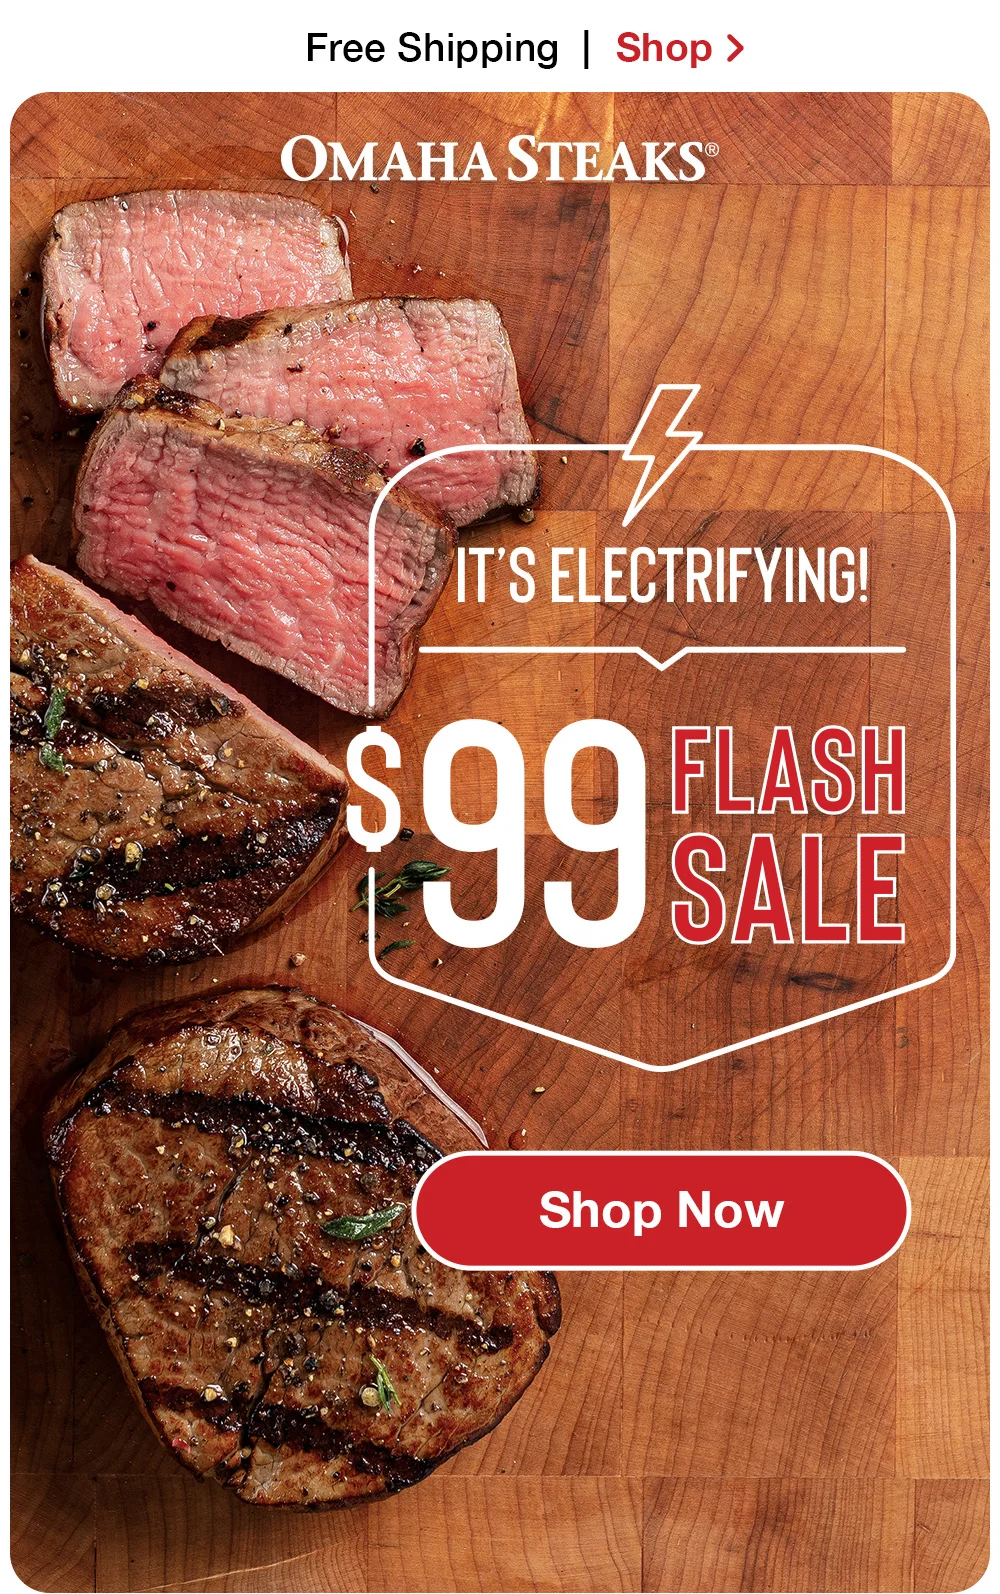 \\$99 Flash Sale! | Shop Now > OMAHA STEAKS® IT'S ELECTRIFYING! \\$99 FLASH SALE || Shop Now